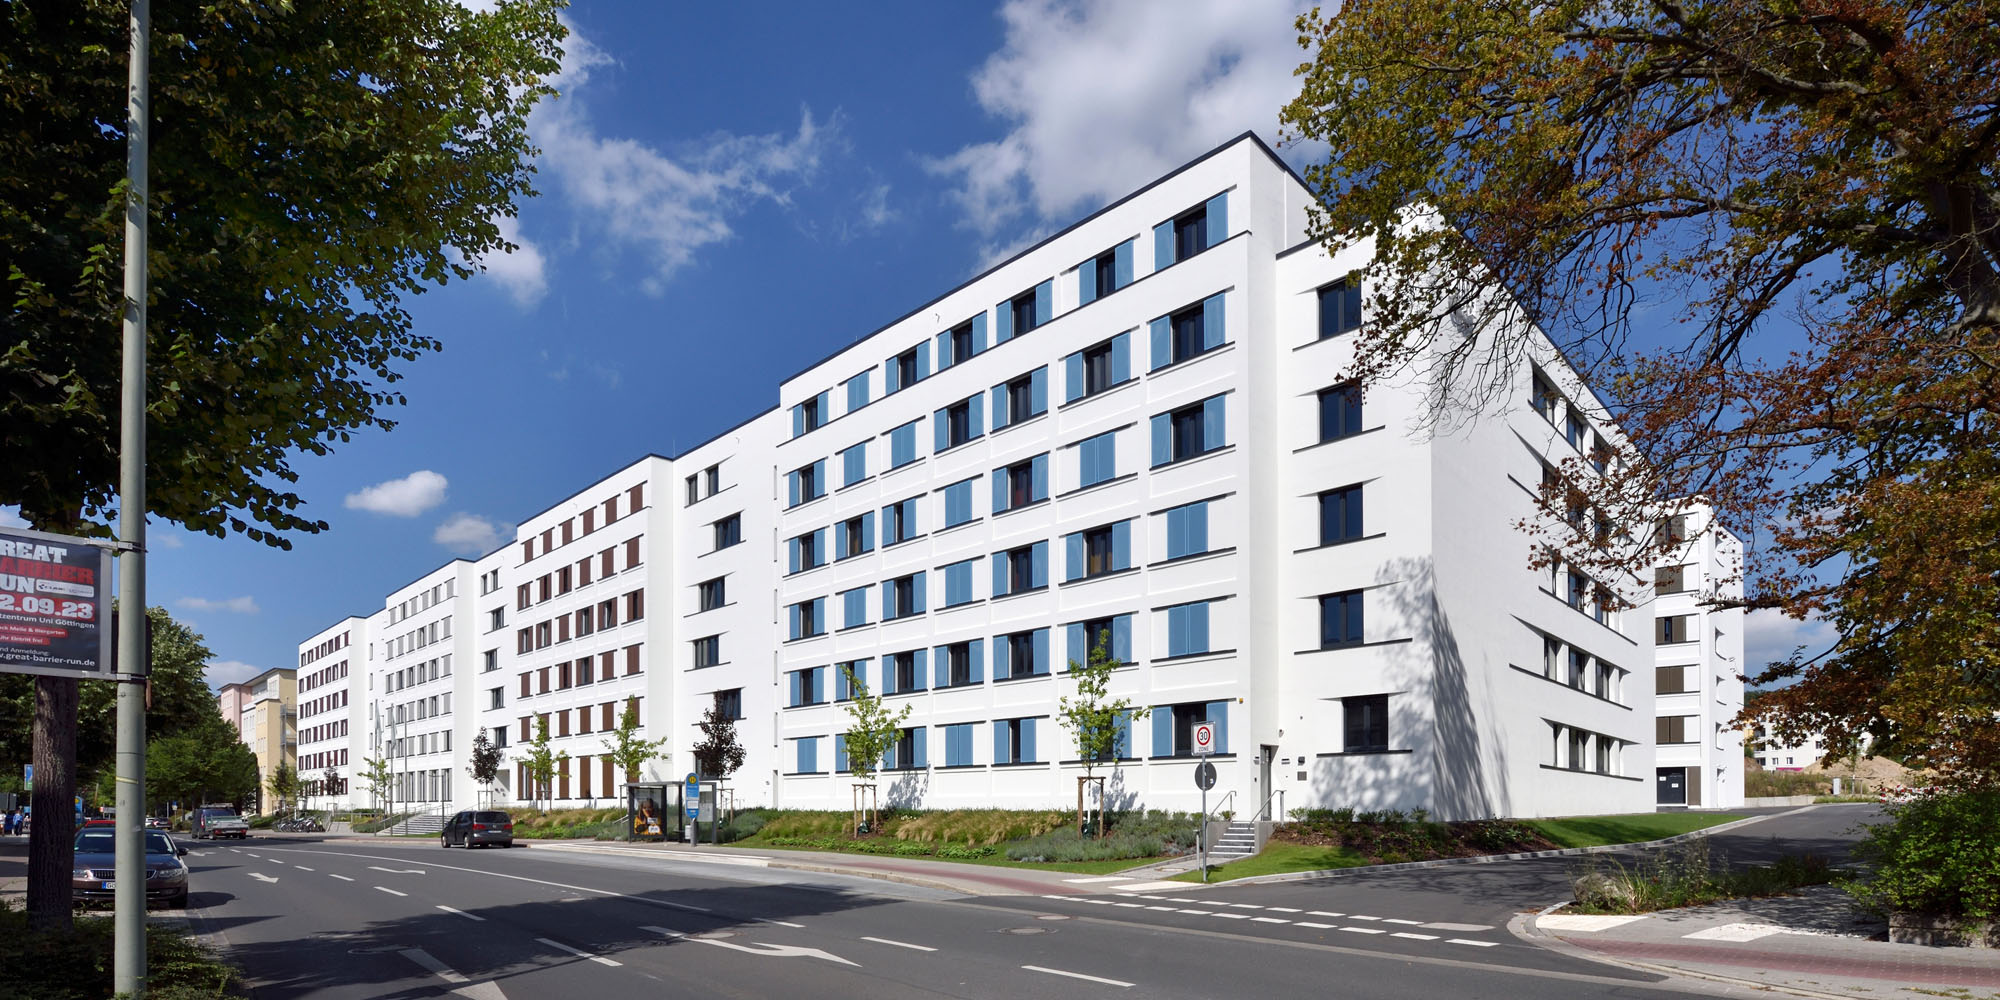 Basecamp Göttingen: 592 Appartements mit Rundumservice für Studierende